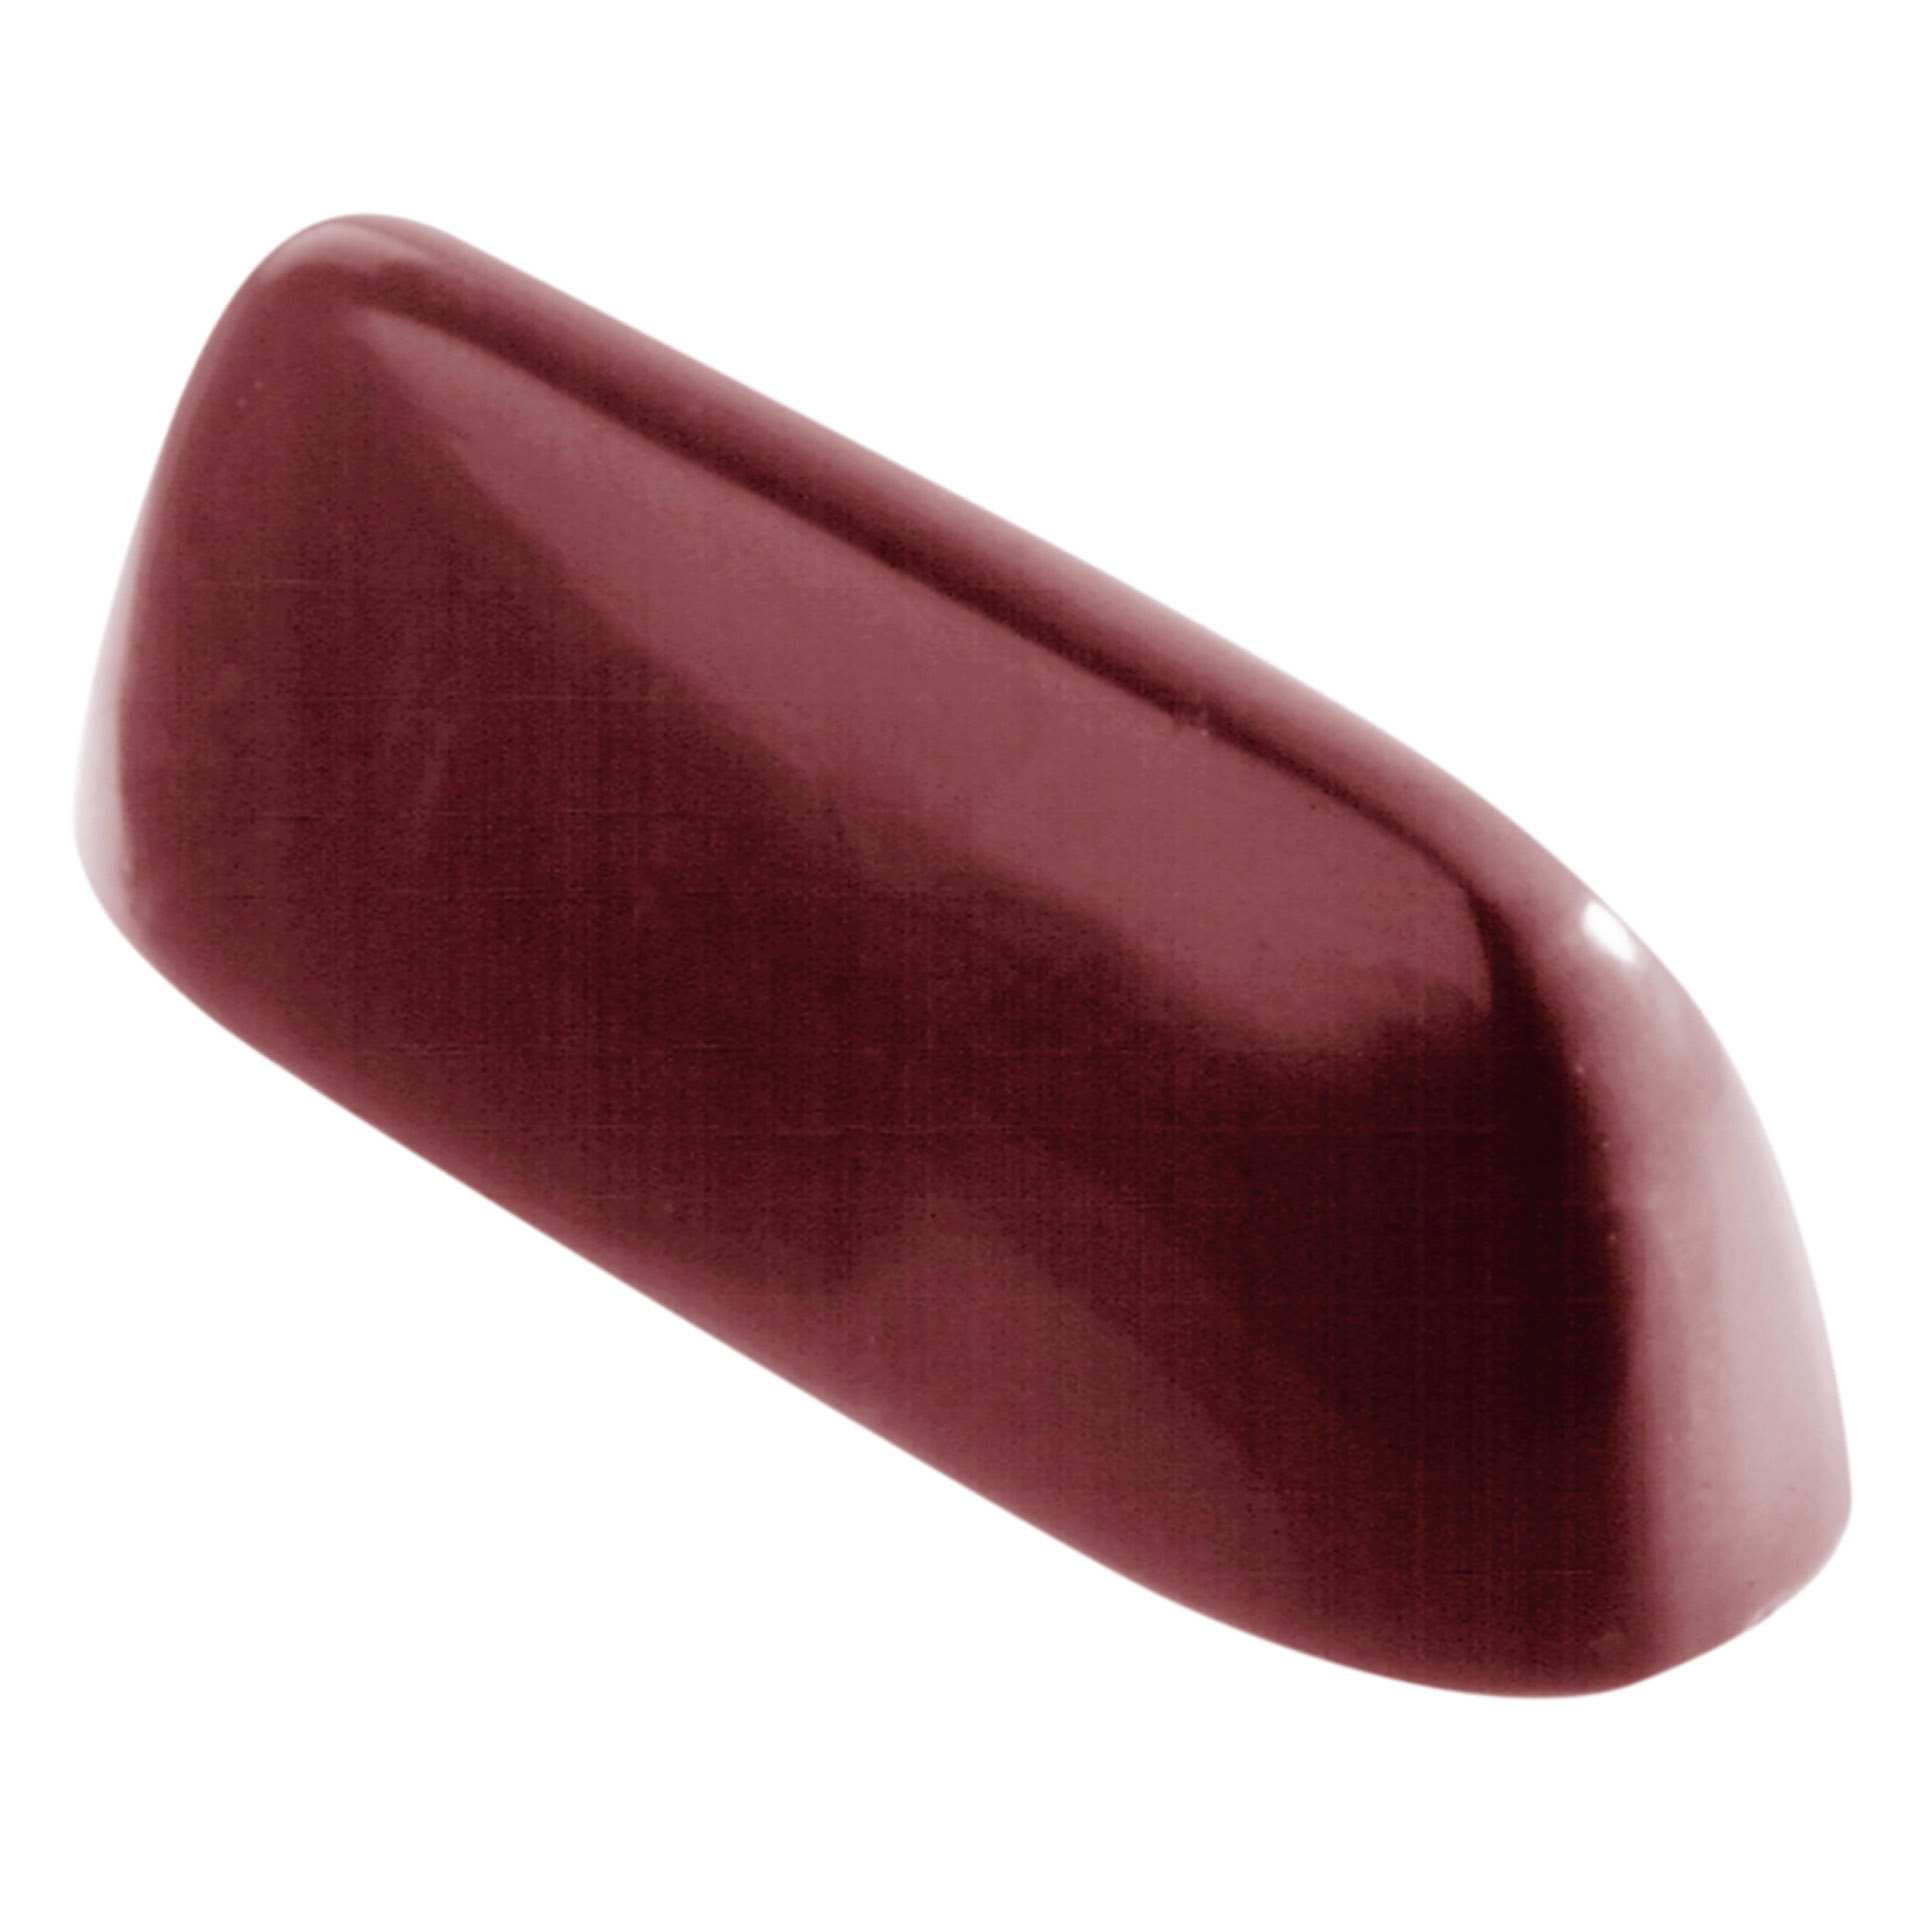 Schokoladen-Form - Gianduja - Abm. 27,5 x 13,5 x 2,4 cm - Polycarbonat - 421173-C